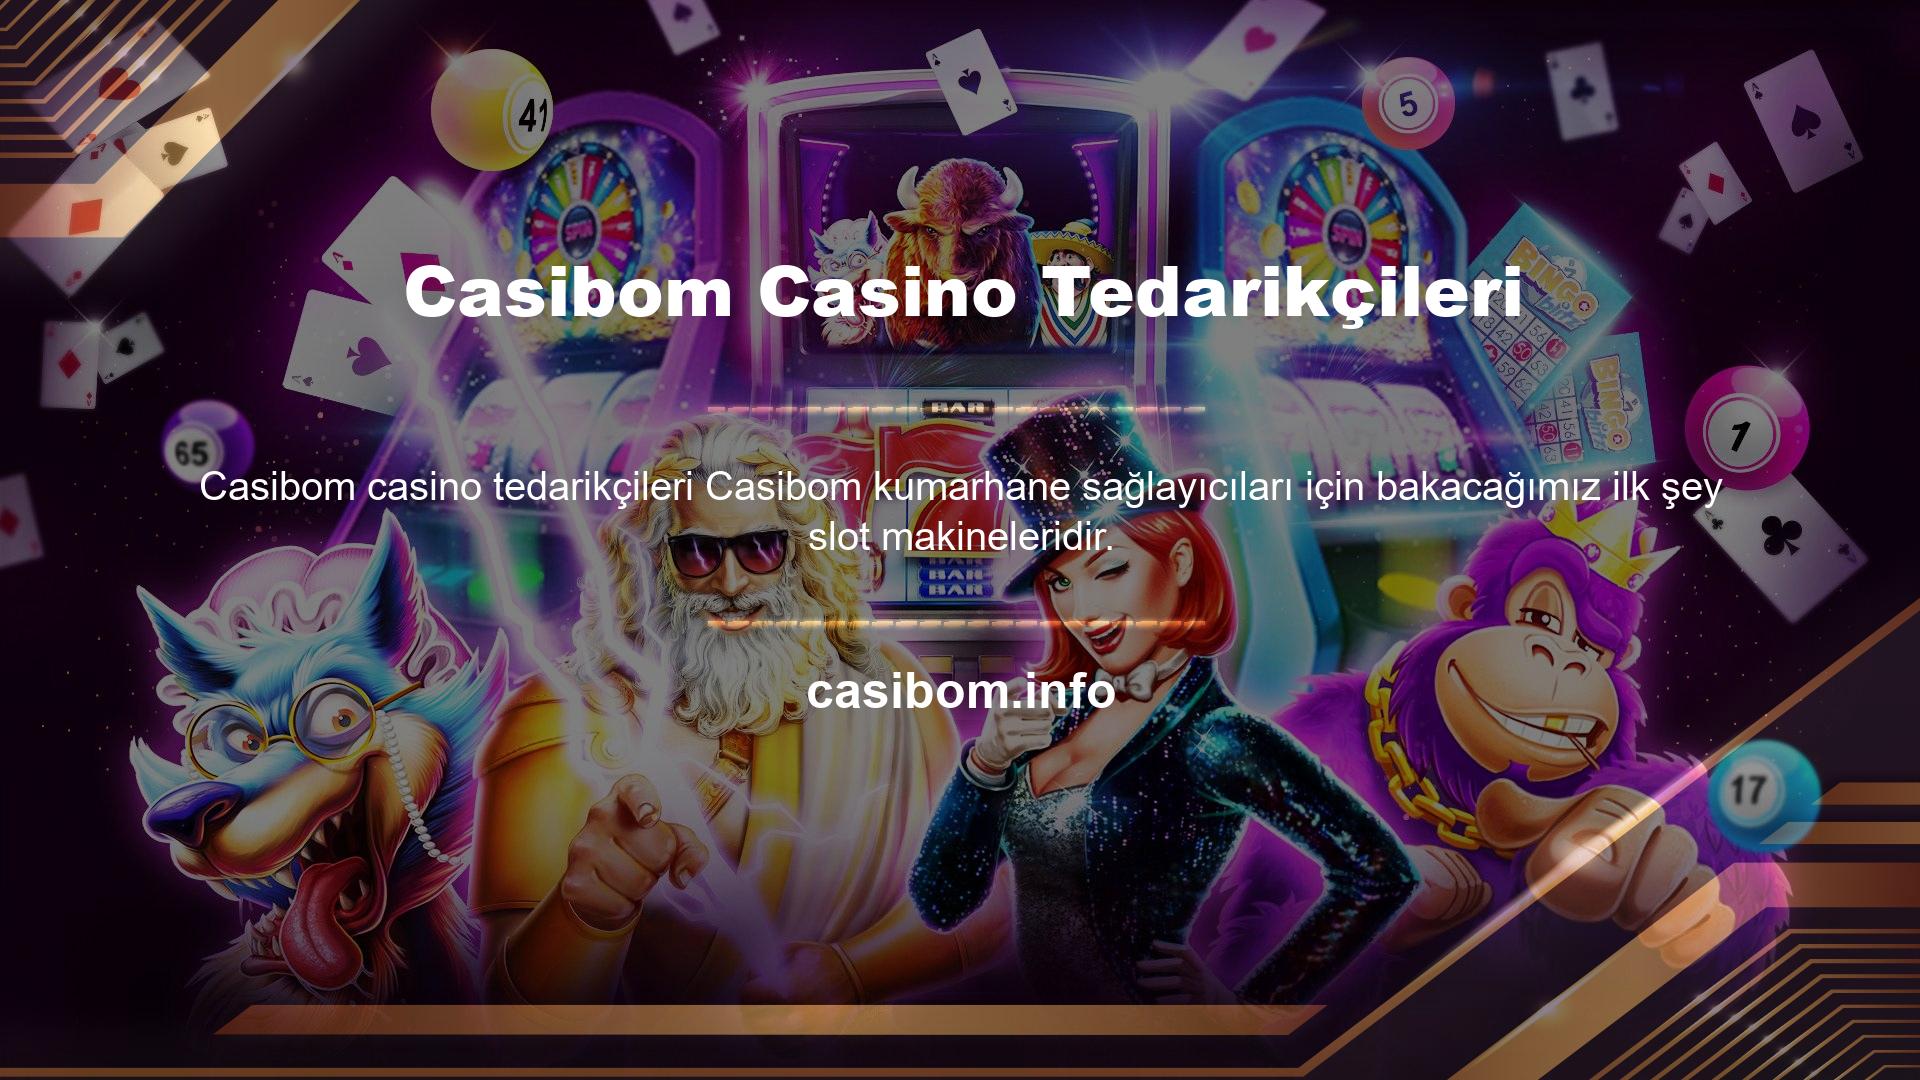 Hemen ardından Canlı Casino bölümünü de dahil etmek istedik:

Oyun sağlayıcıları arasında seçim yaparken de doğrudan tıklayabilirsiniz